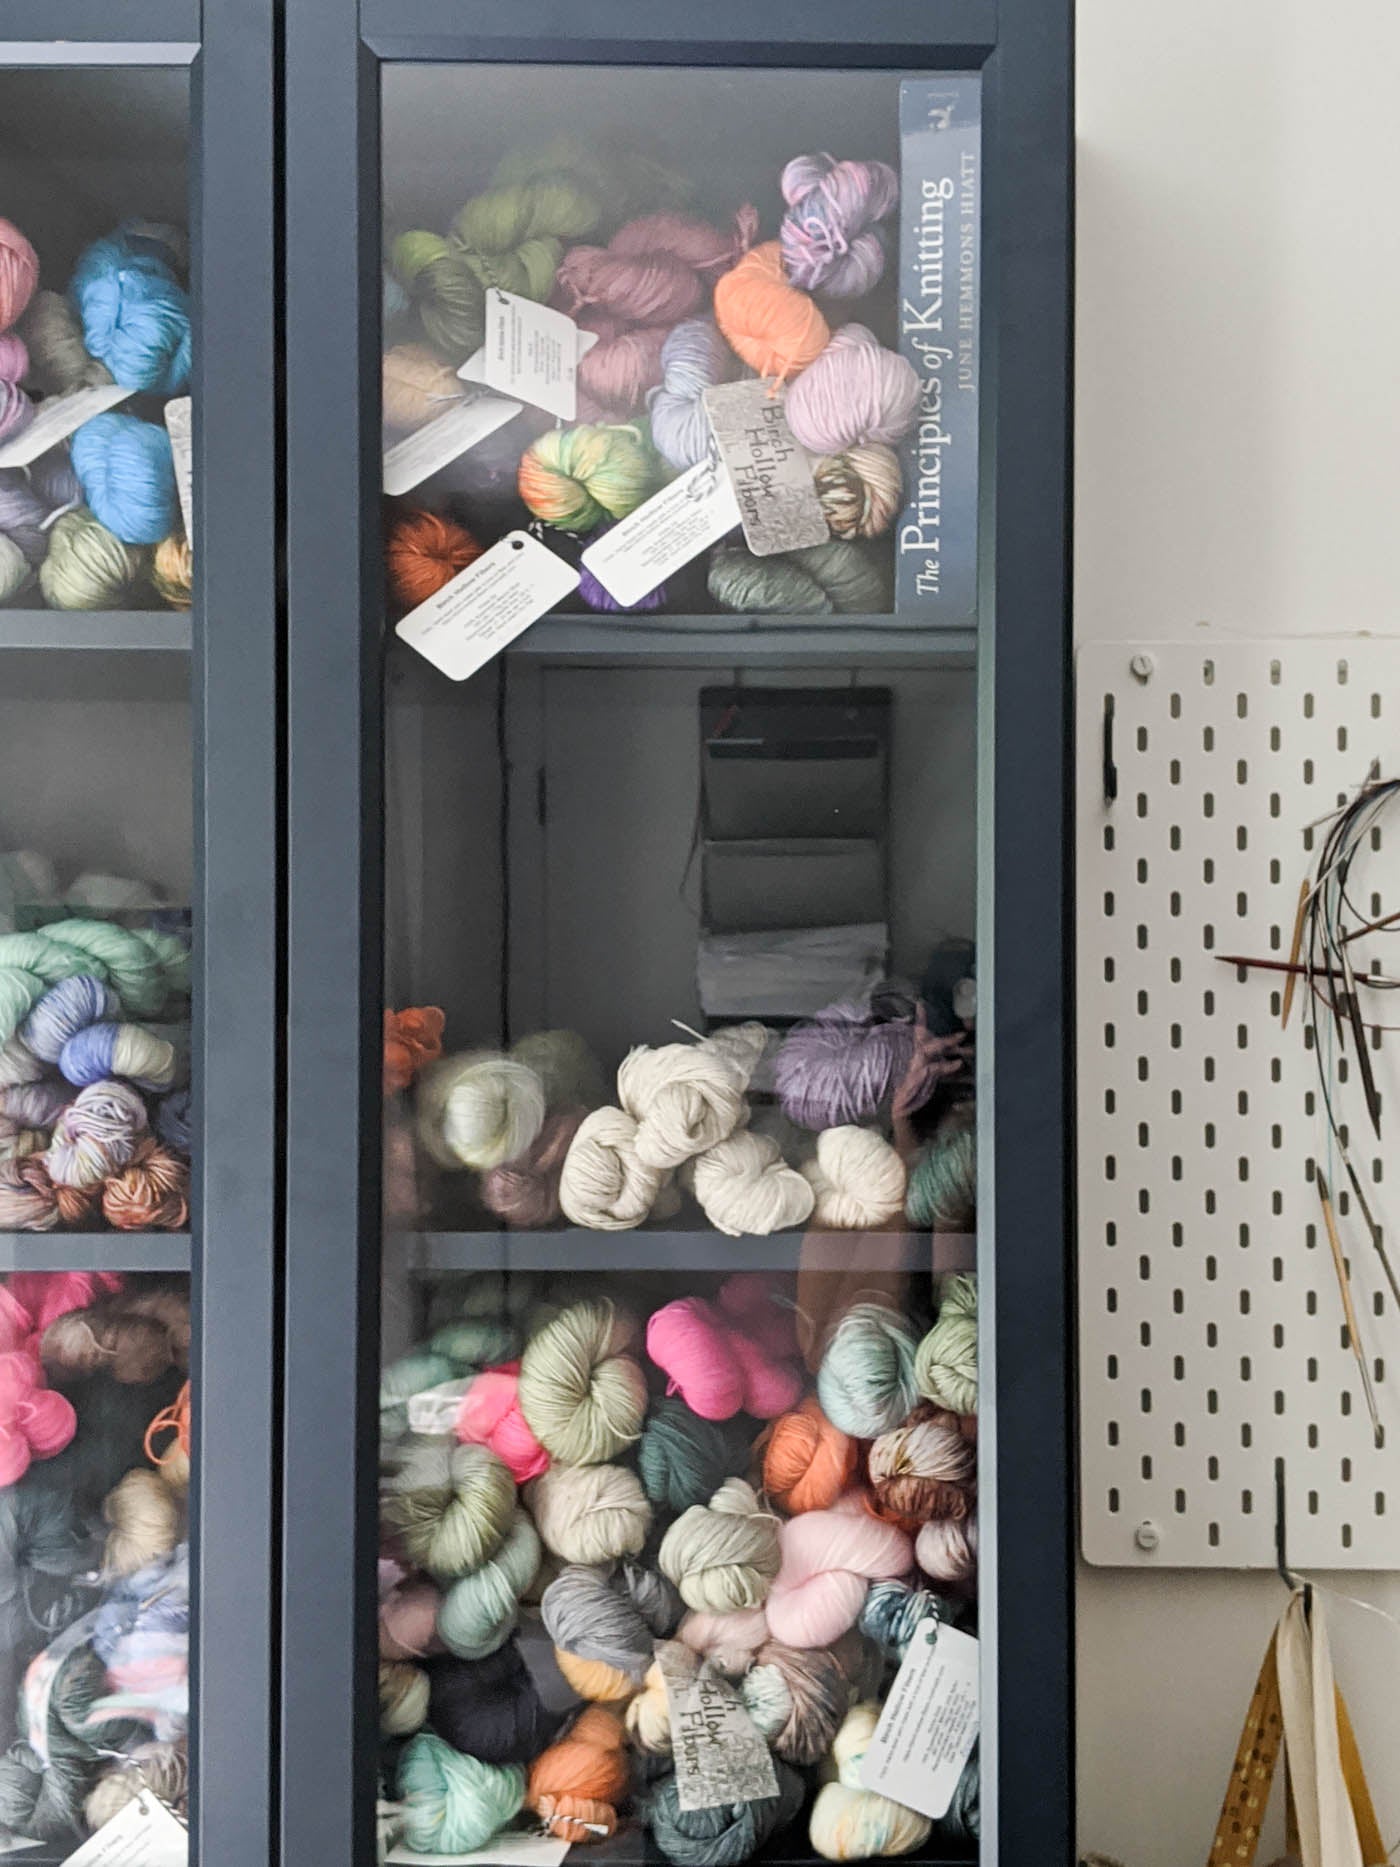 Shelves of yarn